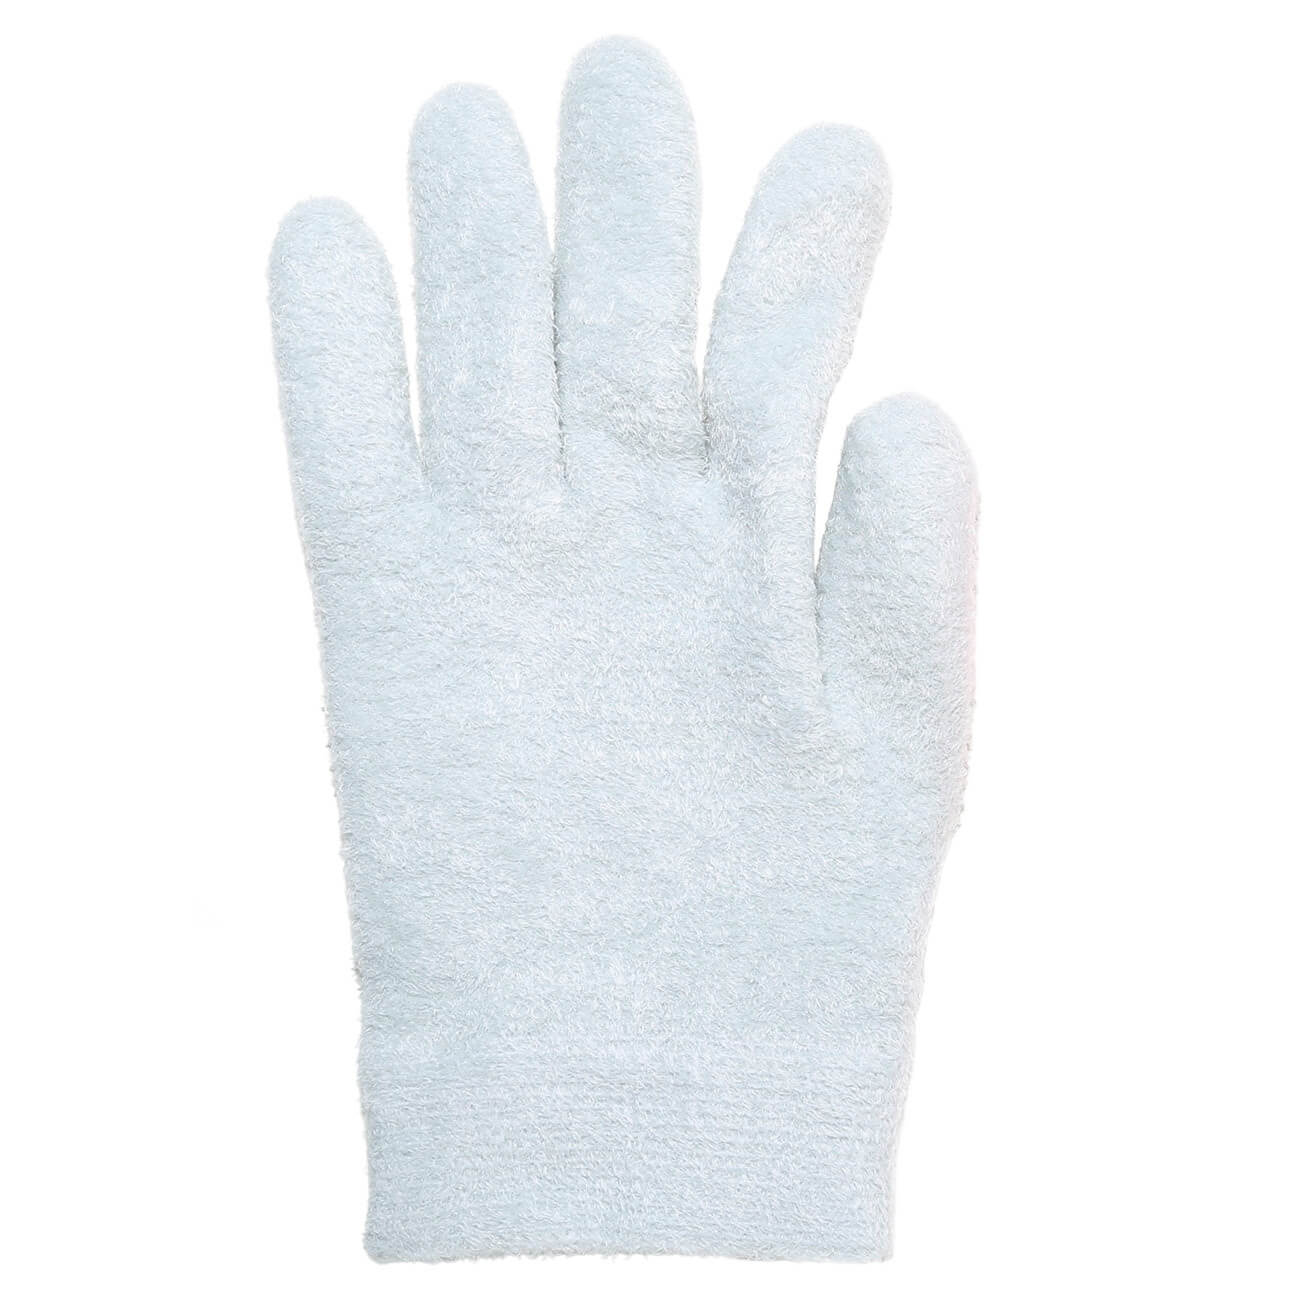 СПА-перчатки гелевые, 20 см, полиэстер, многоразовые, серые, Spa корректоры гелевые olvist для пальцев ног